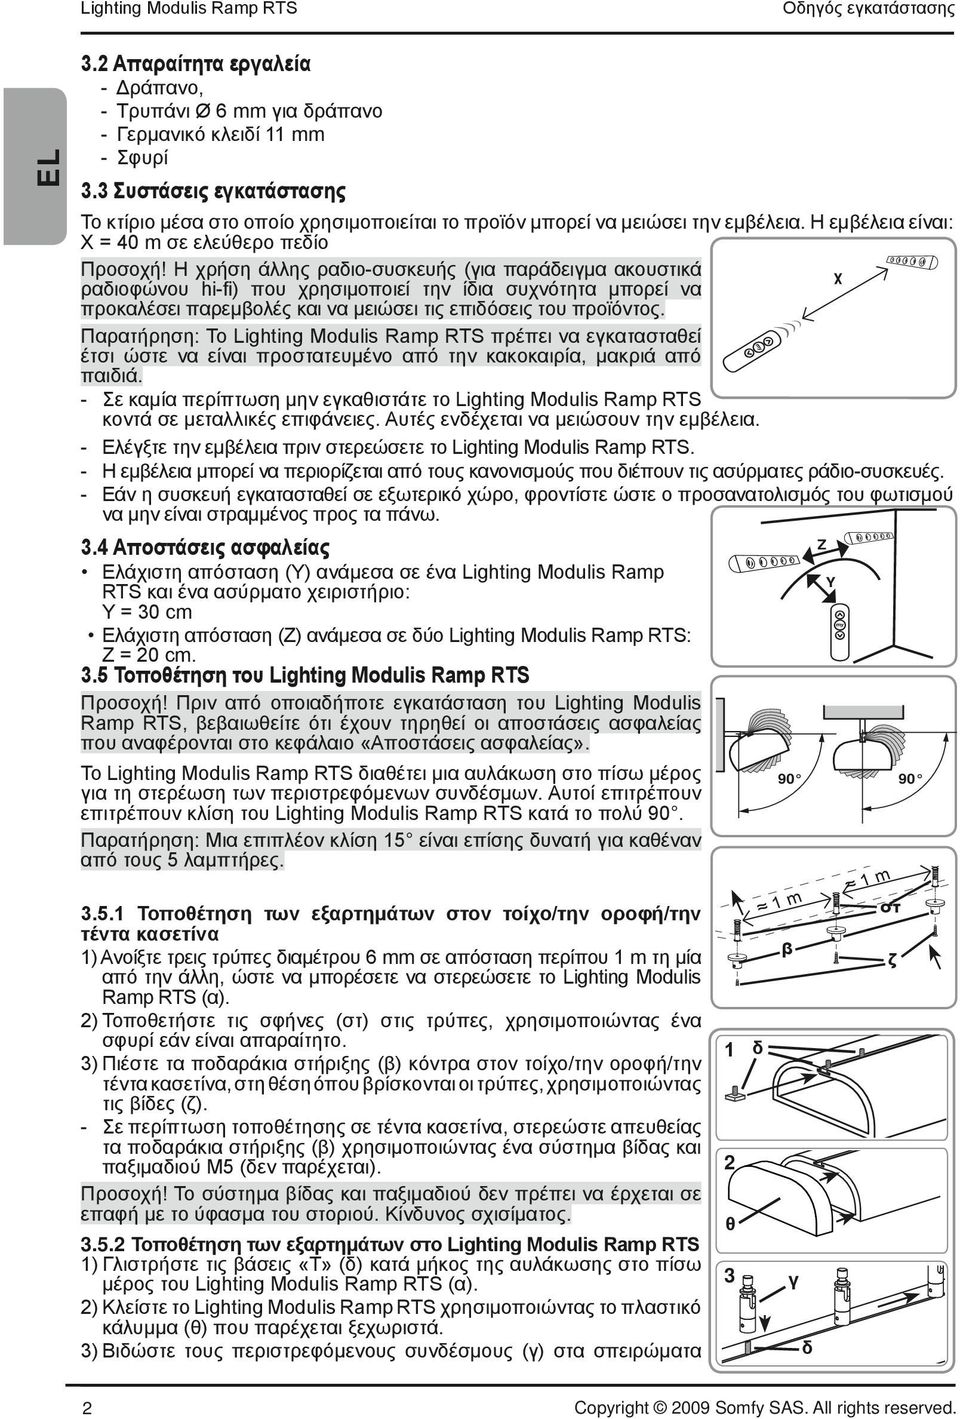 Lighting Modulis Rmp RTS 90. : 5 5 μ..5. μ / / ) μ 6 mm m μ, μ Lighting Modulis Rmp RTS ( ). ) ( ), μ. ) ( ) / /,, μ 90 Z Y m m 90 ( )., ( ) μ μ μ M5 ( ).! μ μ μ μ. μ..5. μ Lighting Modulis Rmp RTS ) «T» ( ) μ μ Lighting Modulis Rmp RTS ( ).